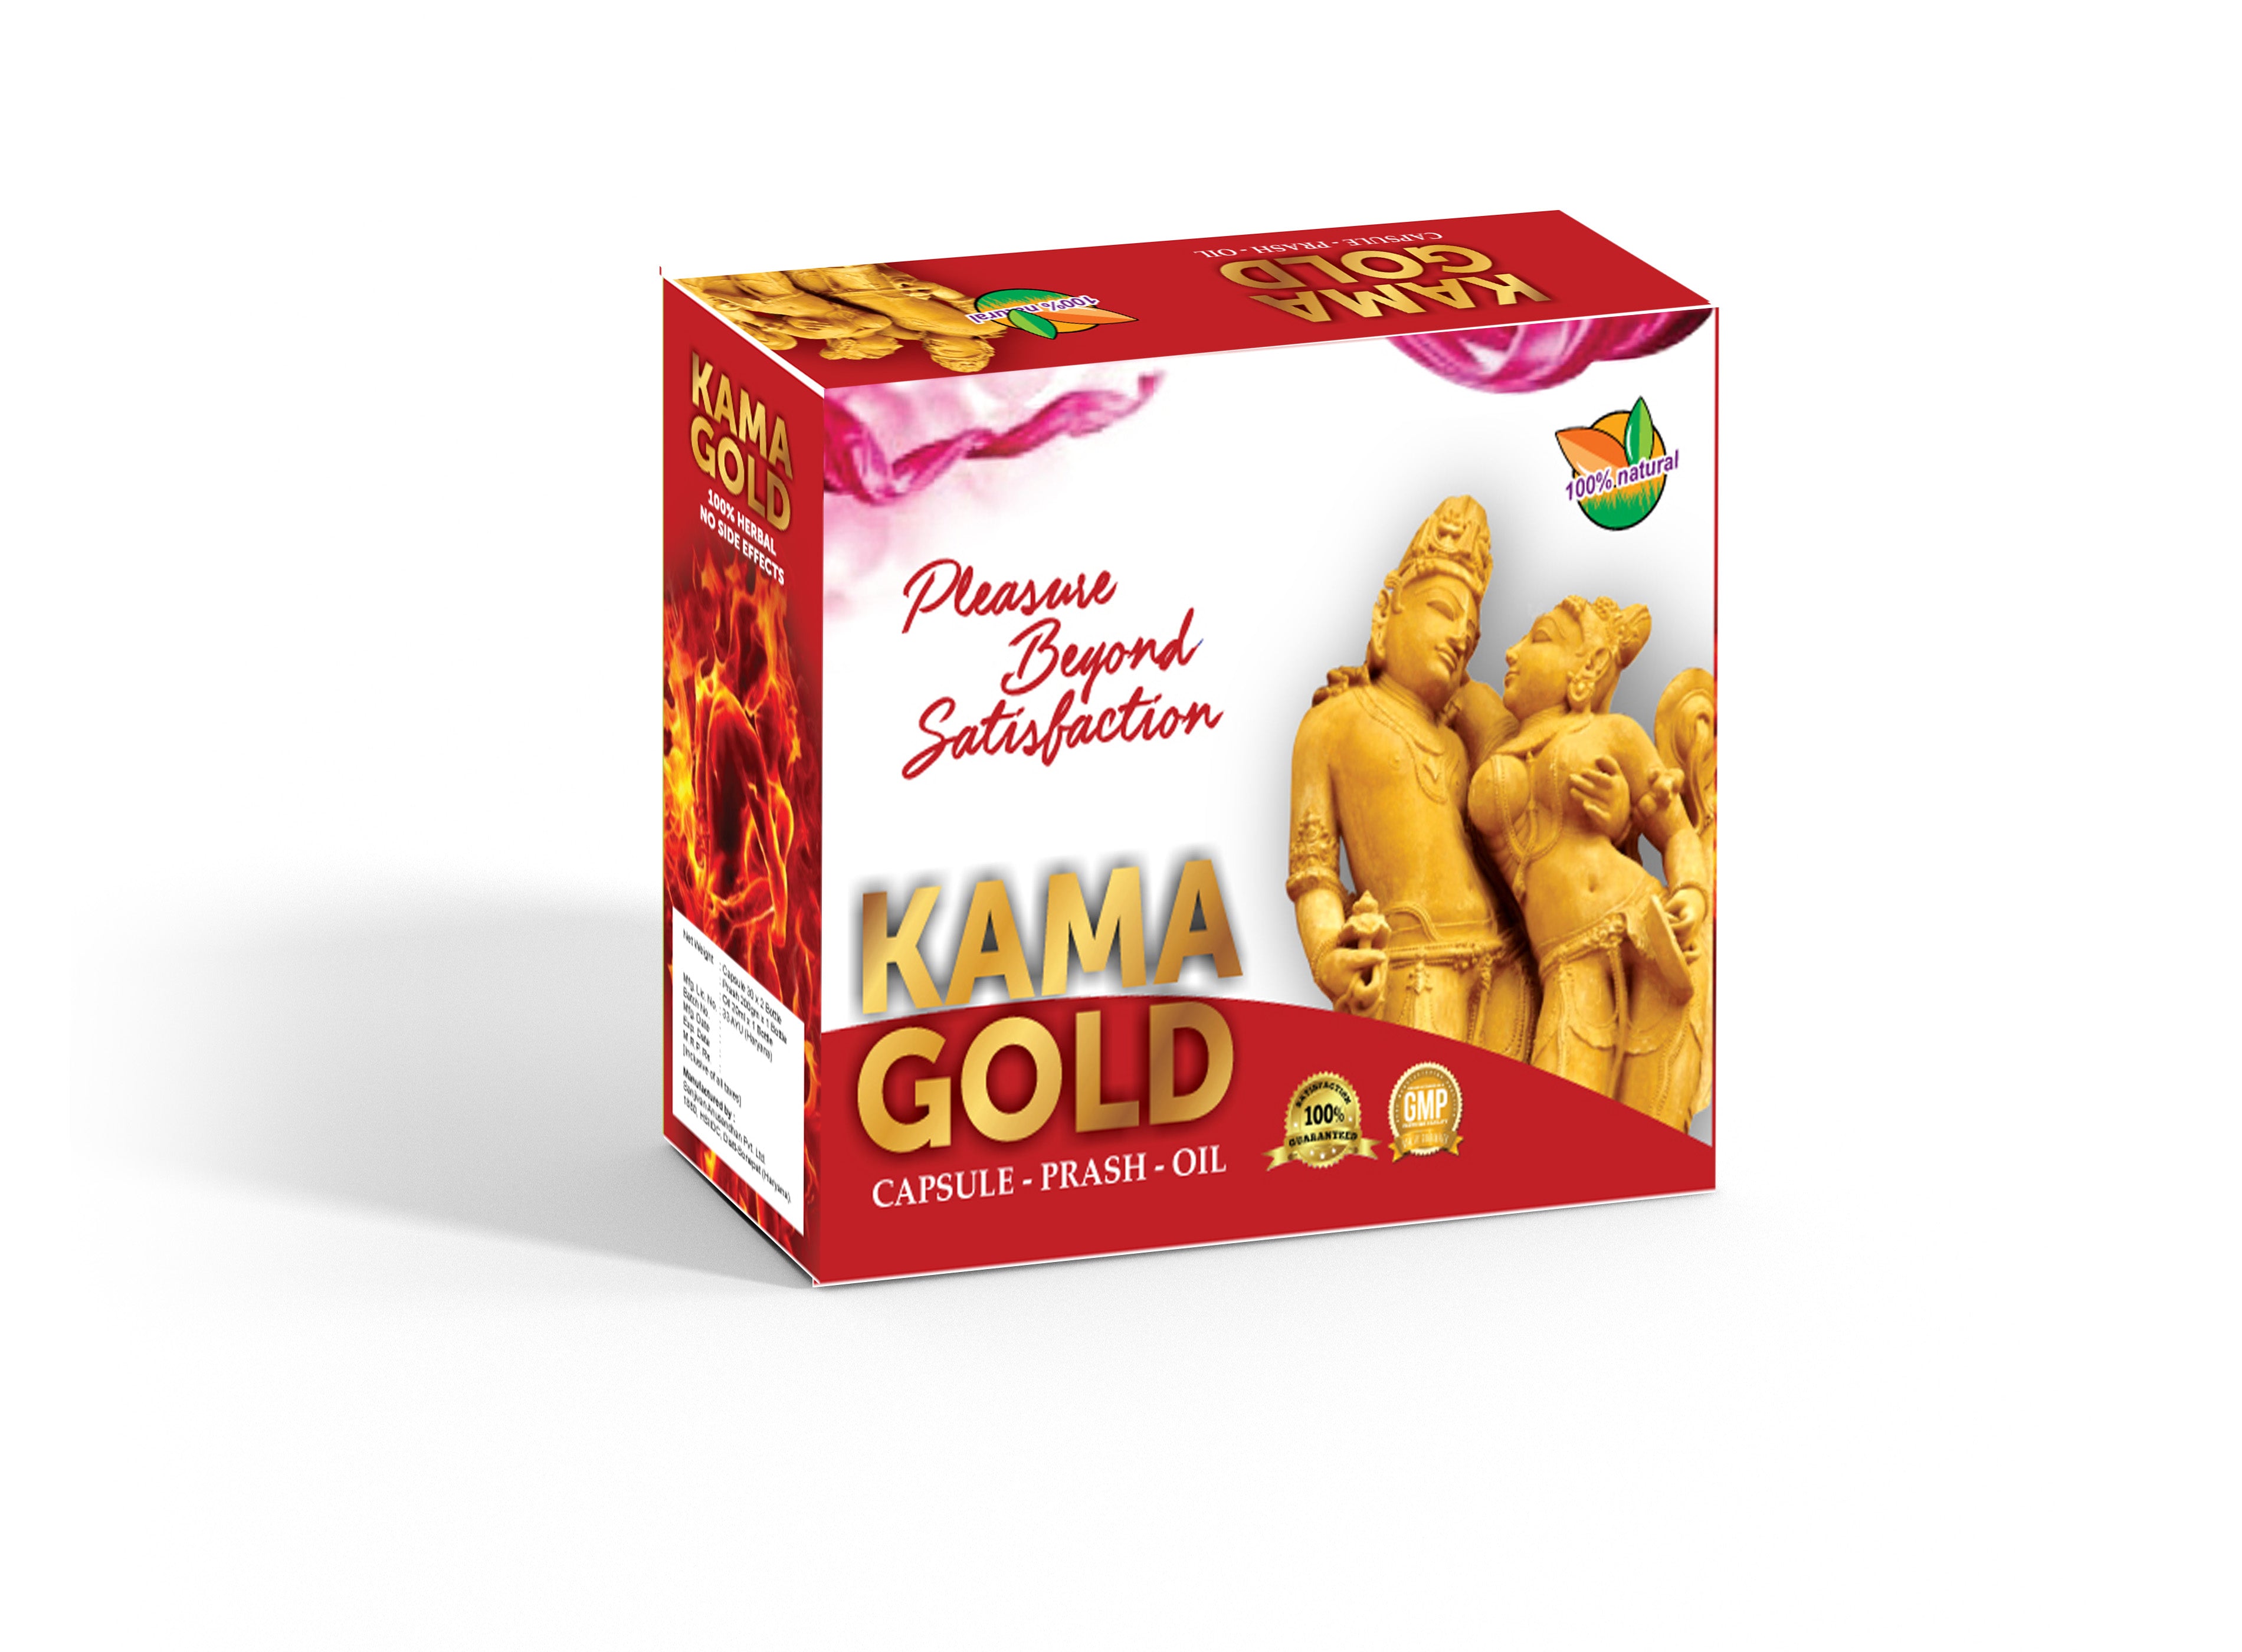 Kama Gold (Capsule-60, prash-200g, oil-15ml)